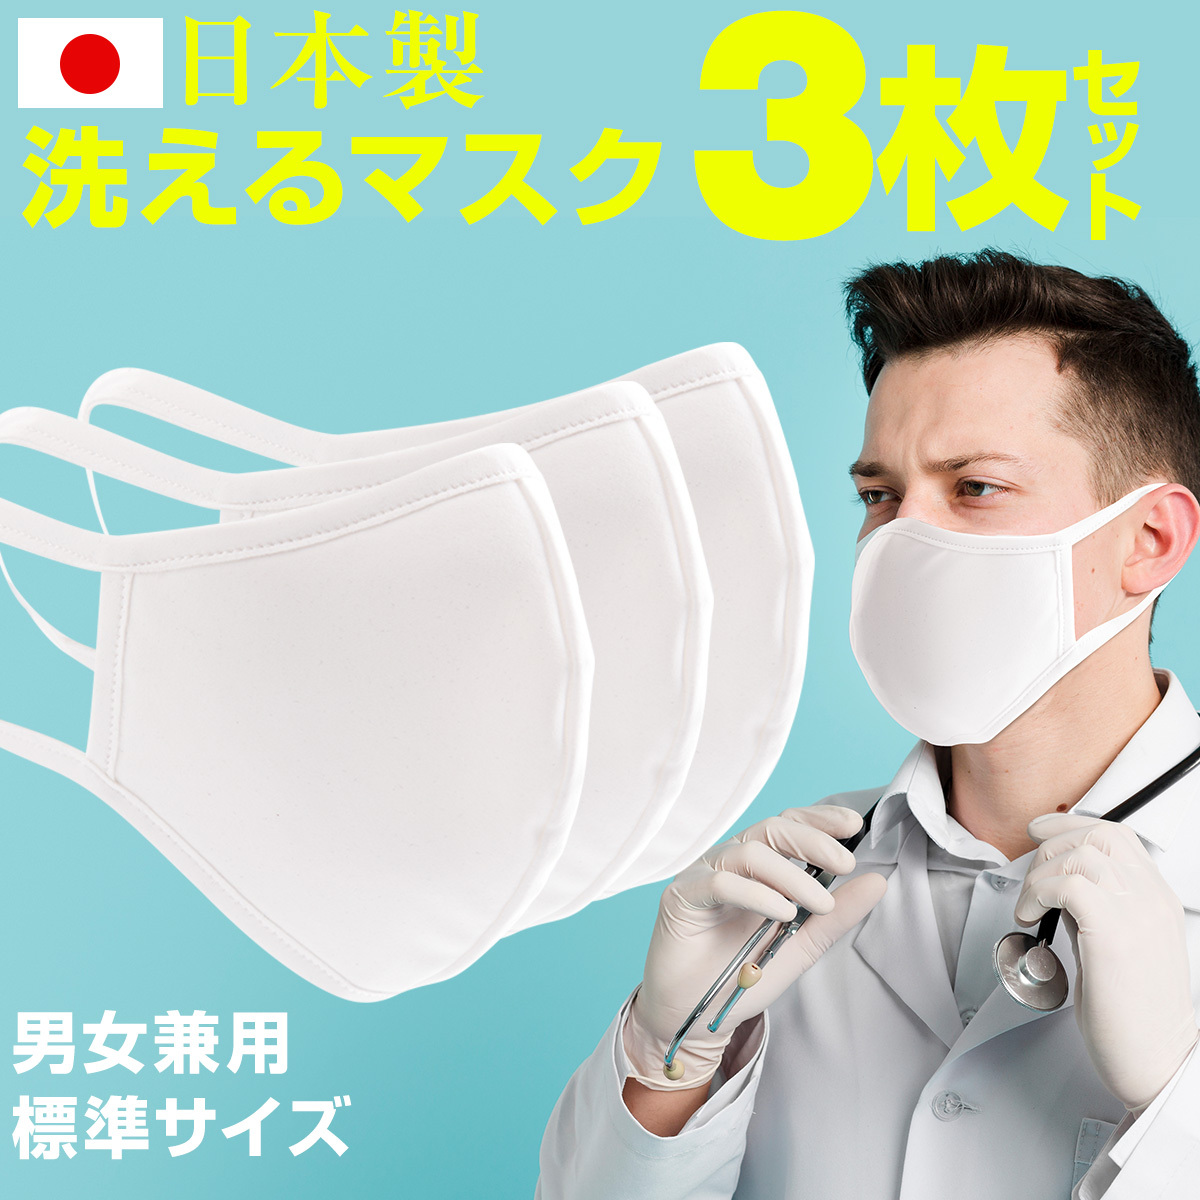 3枚セット 洗えるマスク 東レ素材使用 日本製 水着素材 夏用 日焼け UVカット 対策 蒸れない 立体 男性用 女性用 布マスク 個包装 衛生用品マスクの商品画像